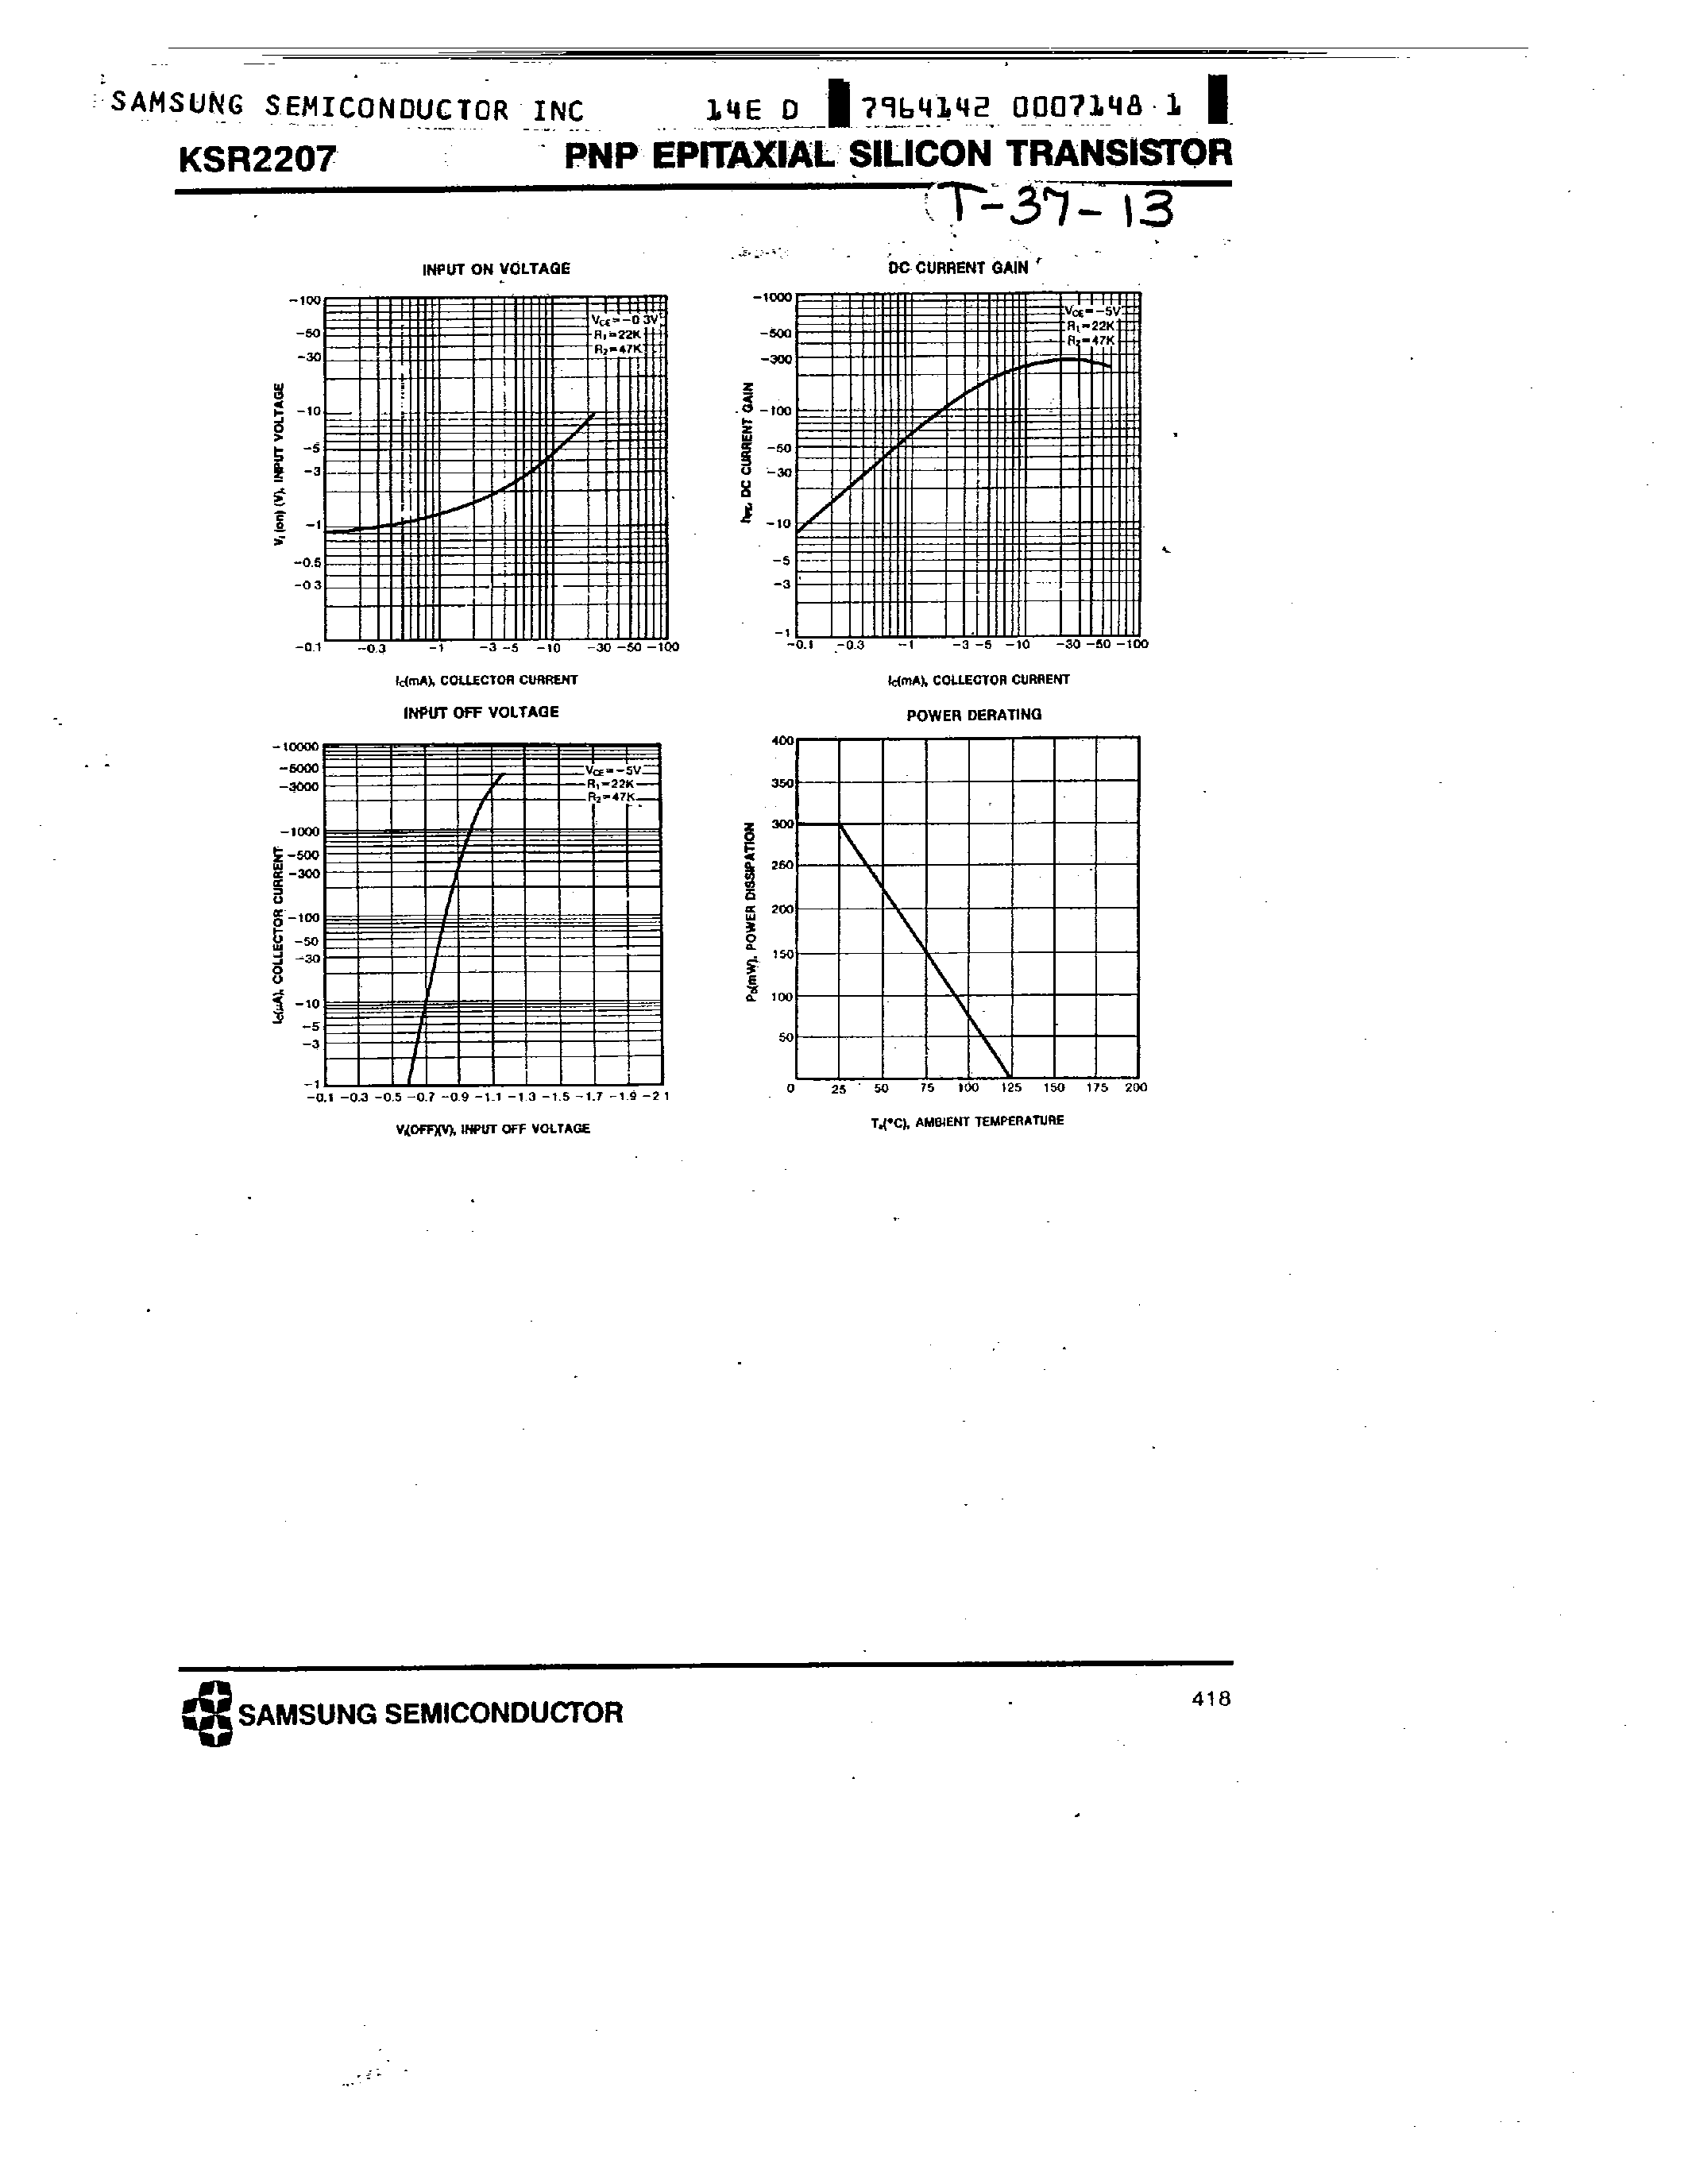 Datasheet KSR2207 - PNP (SWITCHING APPLICATION) page 2